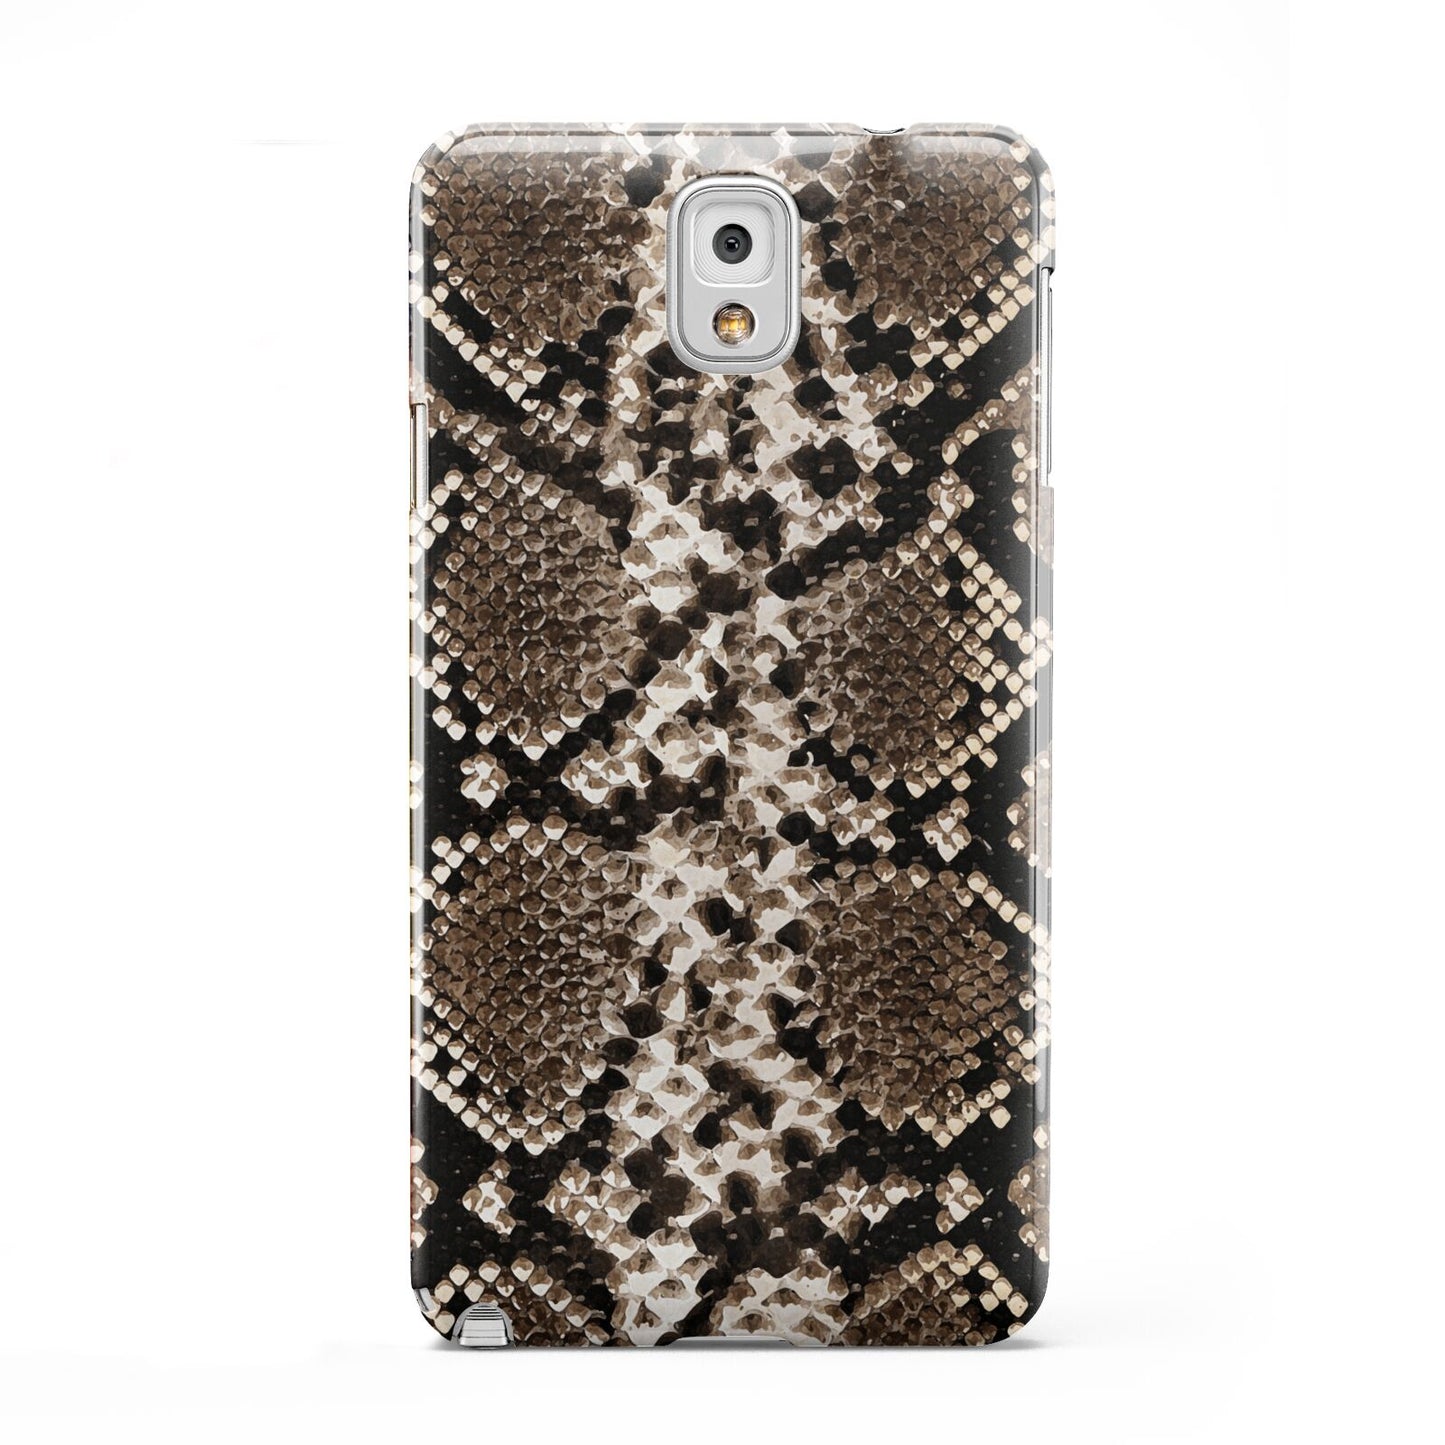 Snakeskin Pattern Samsung Galaxy Note 3 Case